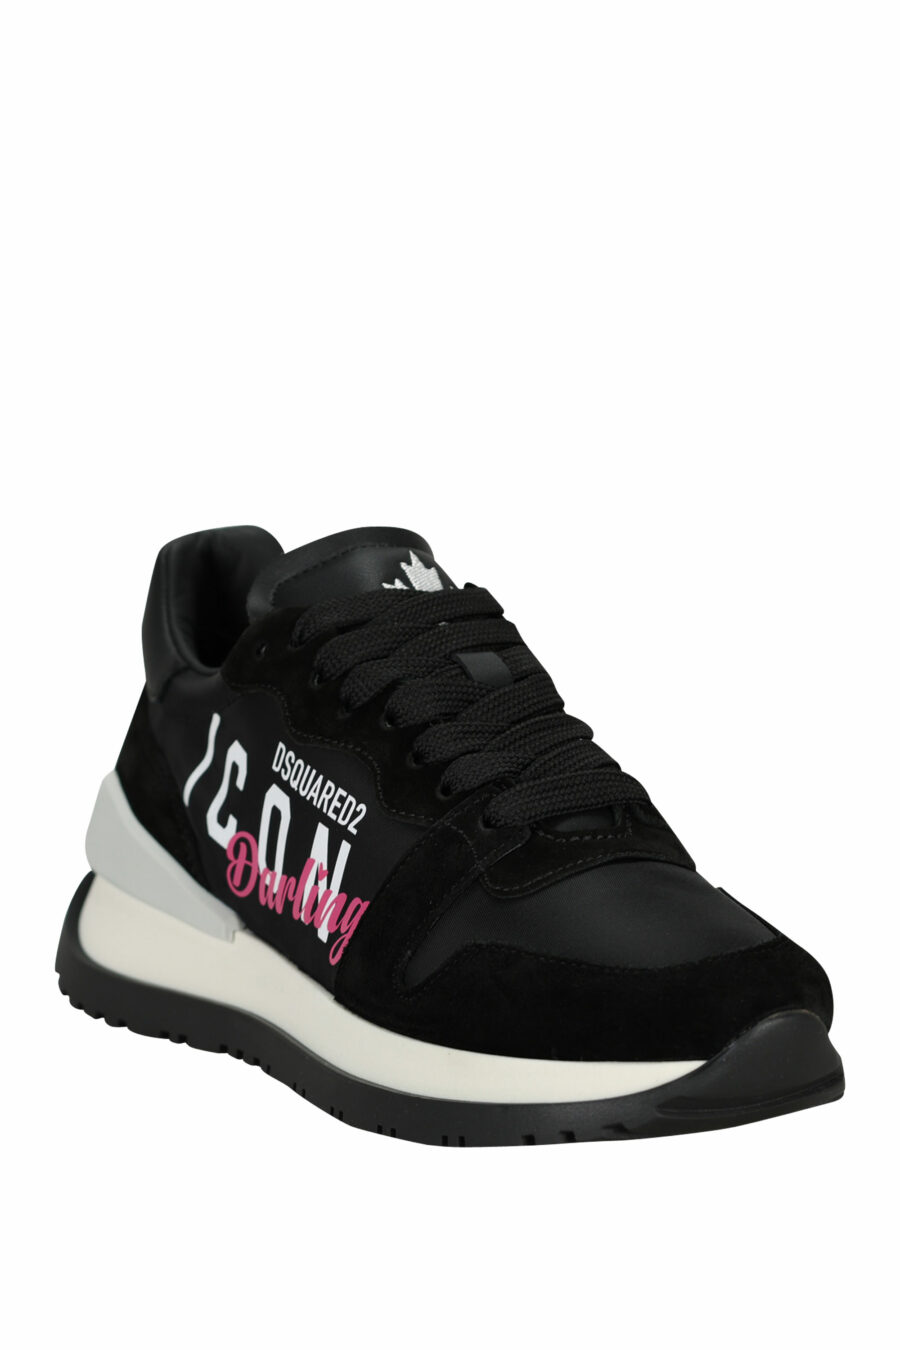 Zapatillas negras con logo "icon darling" - 805777310090 1